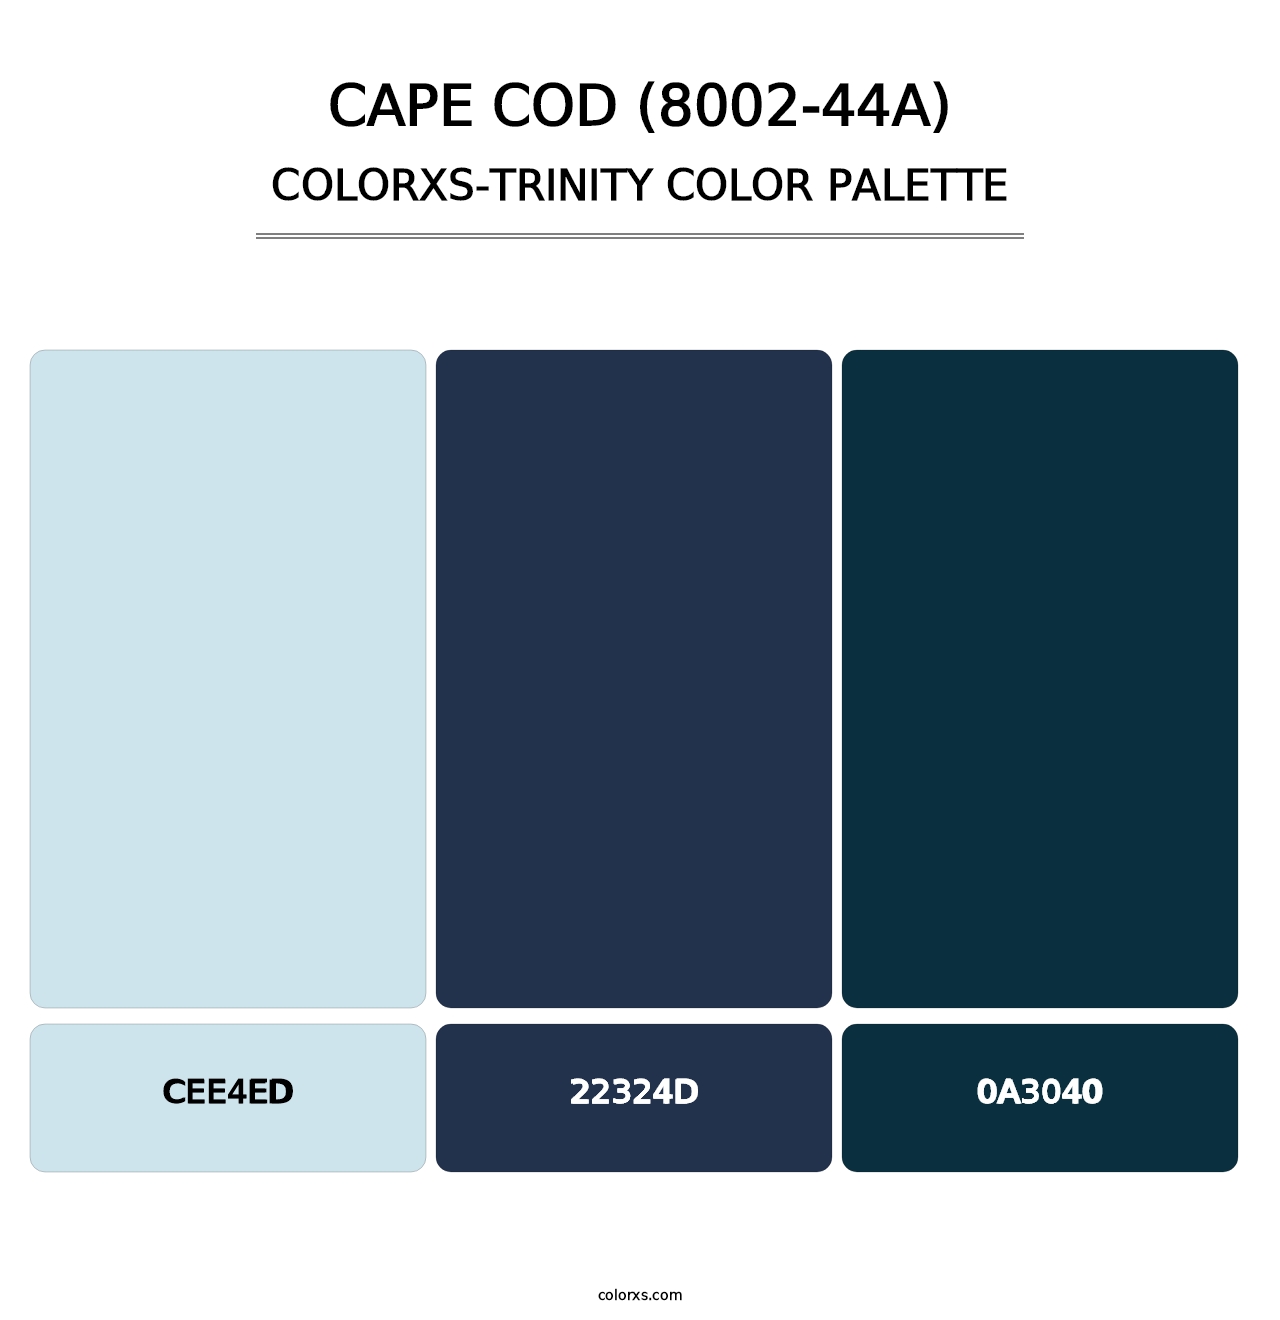 Cape Cod (8002-44A) - Colorxs Trinity Palette